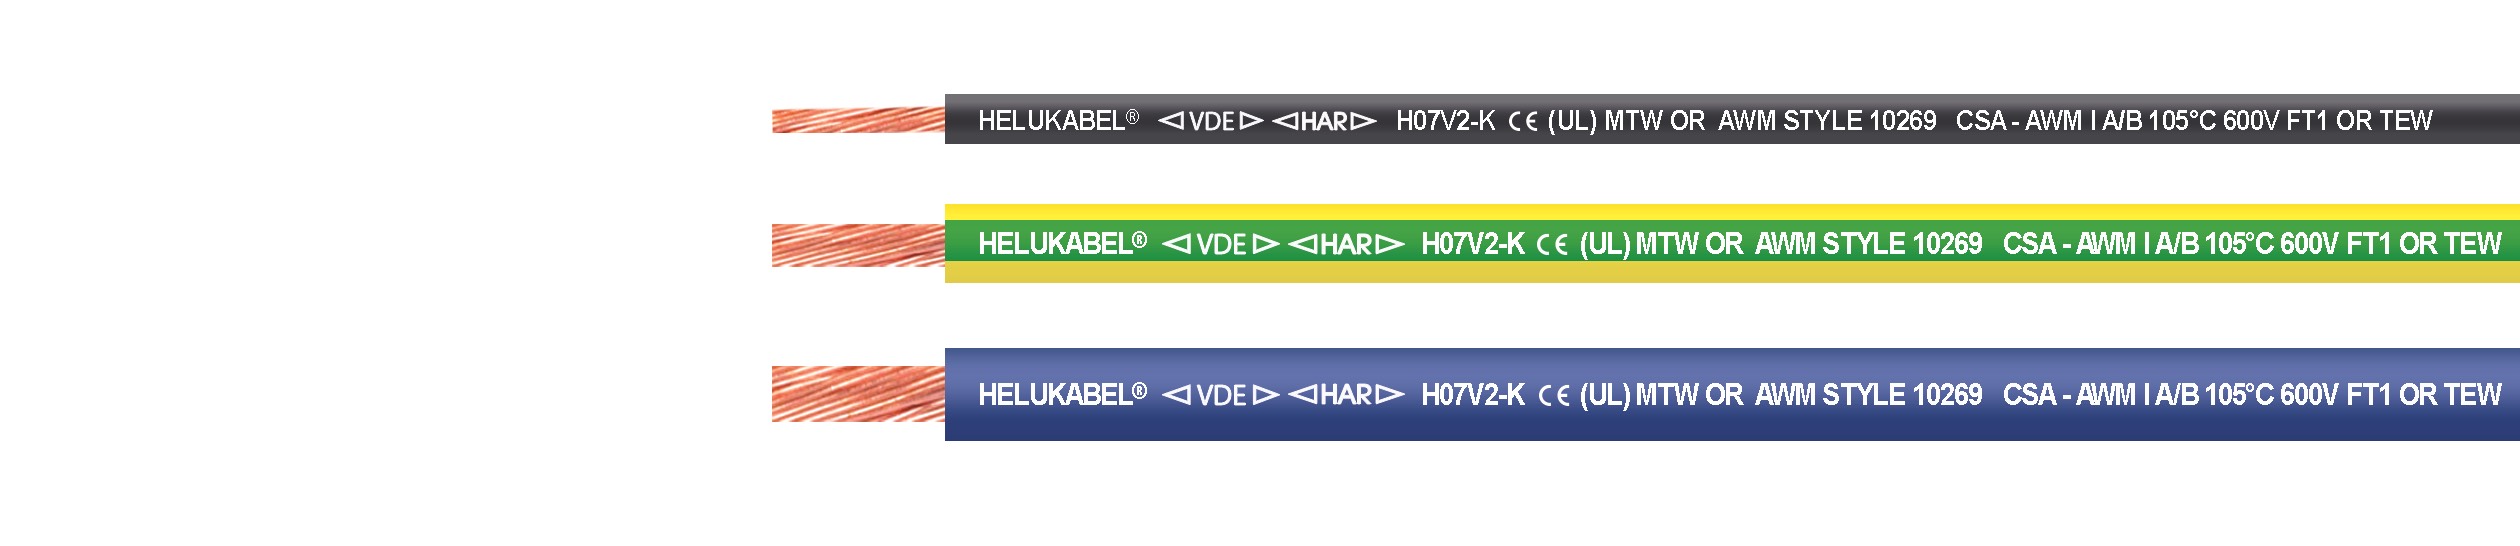 Cable Helukabel: H07V2-K /FIVENORM (UL)